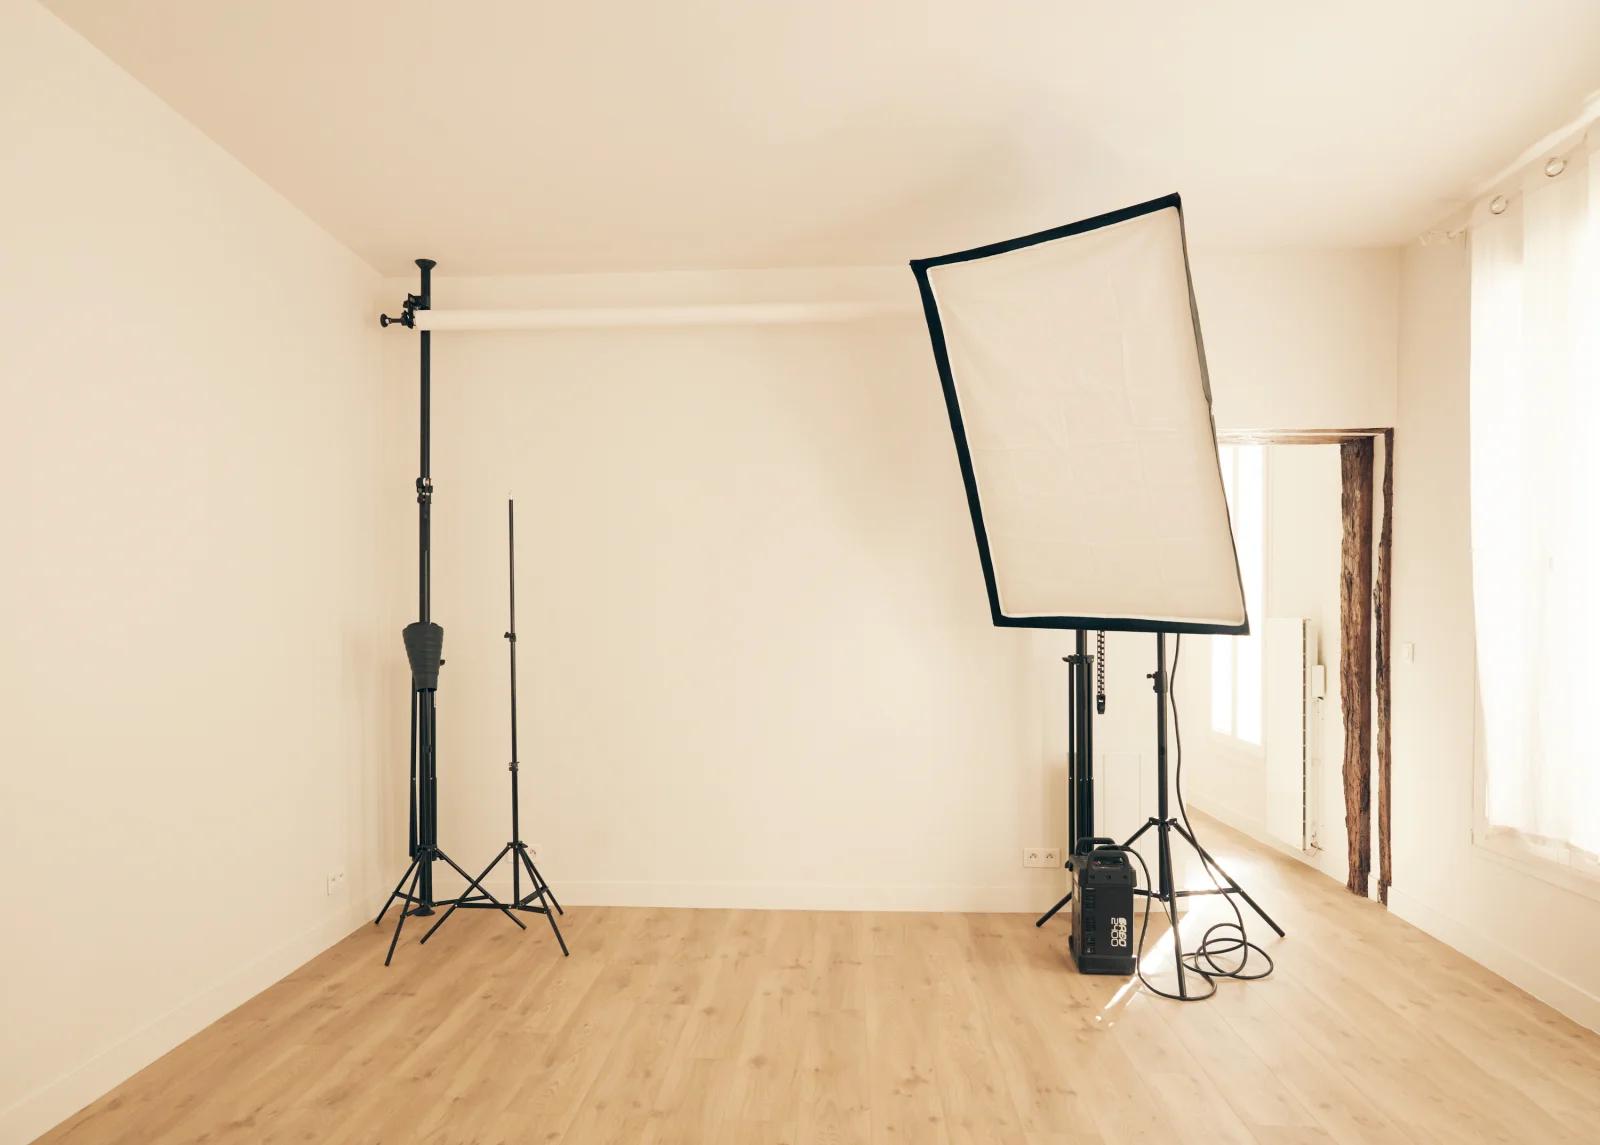 Chambre dans Studio de photographe au style épuré - 1